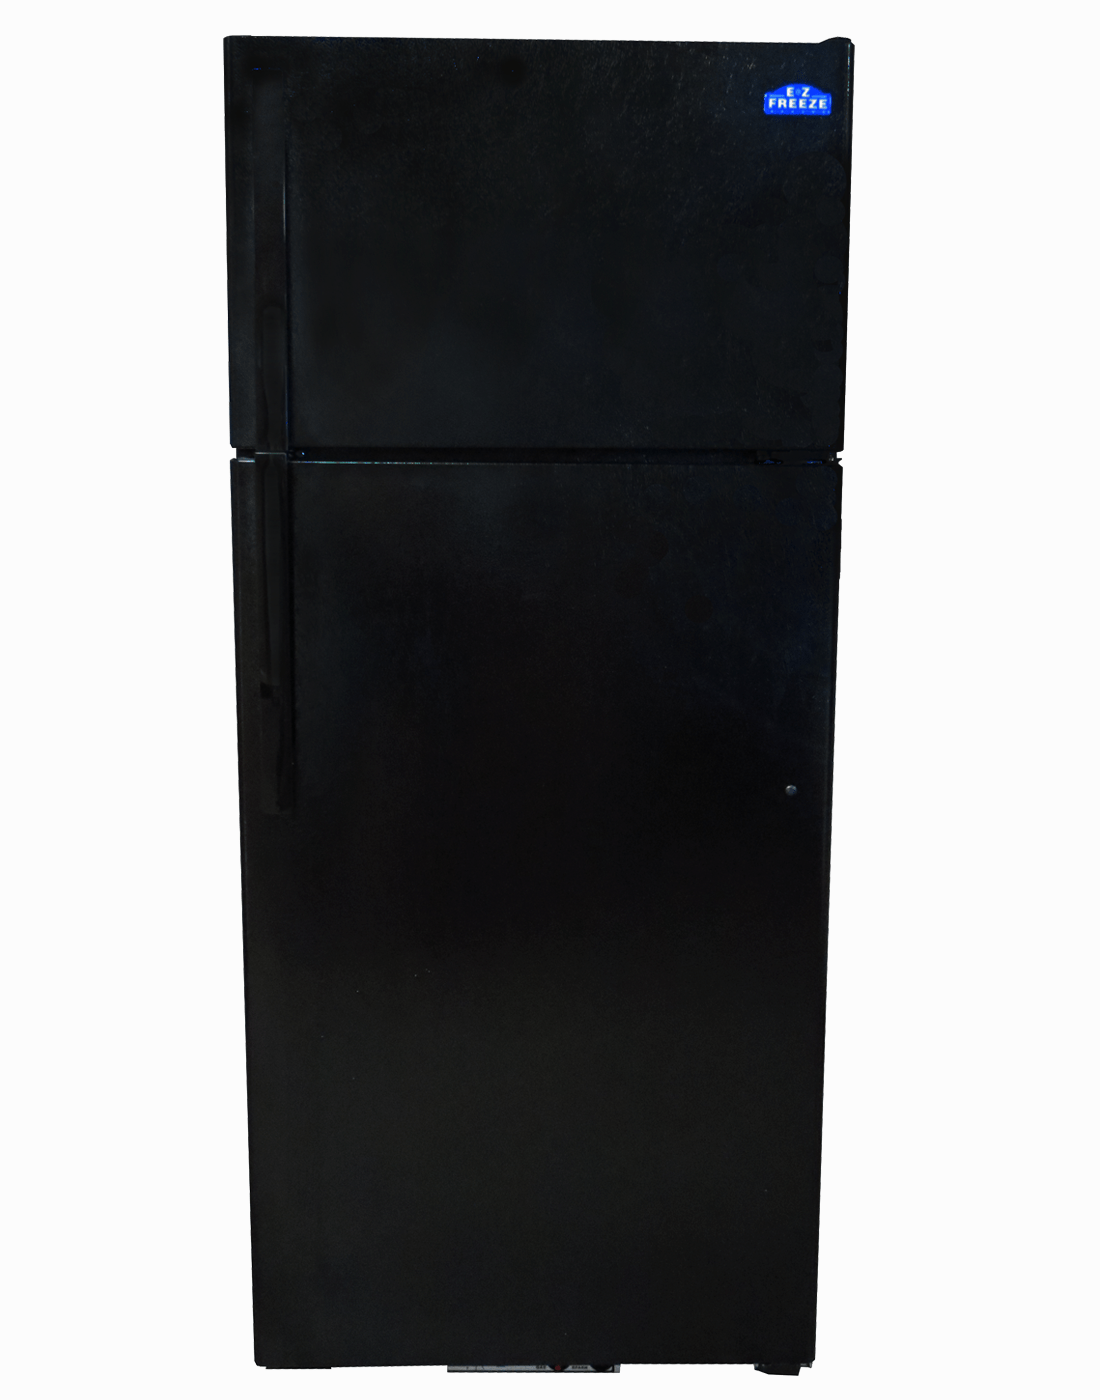 EZ Freeze Propane Refrigerator EZ Freeze 19 Cu. Ft. Black Propane Gas Refrigerator EZ-19B